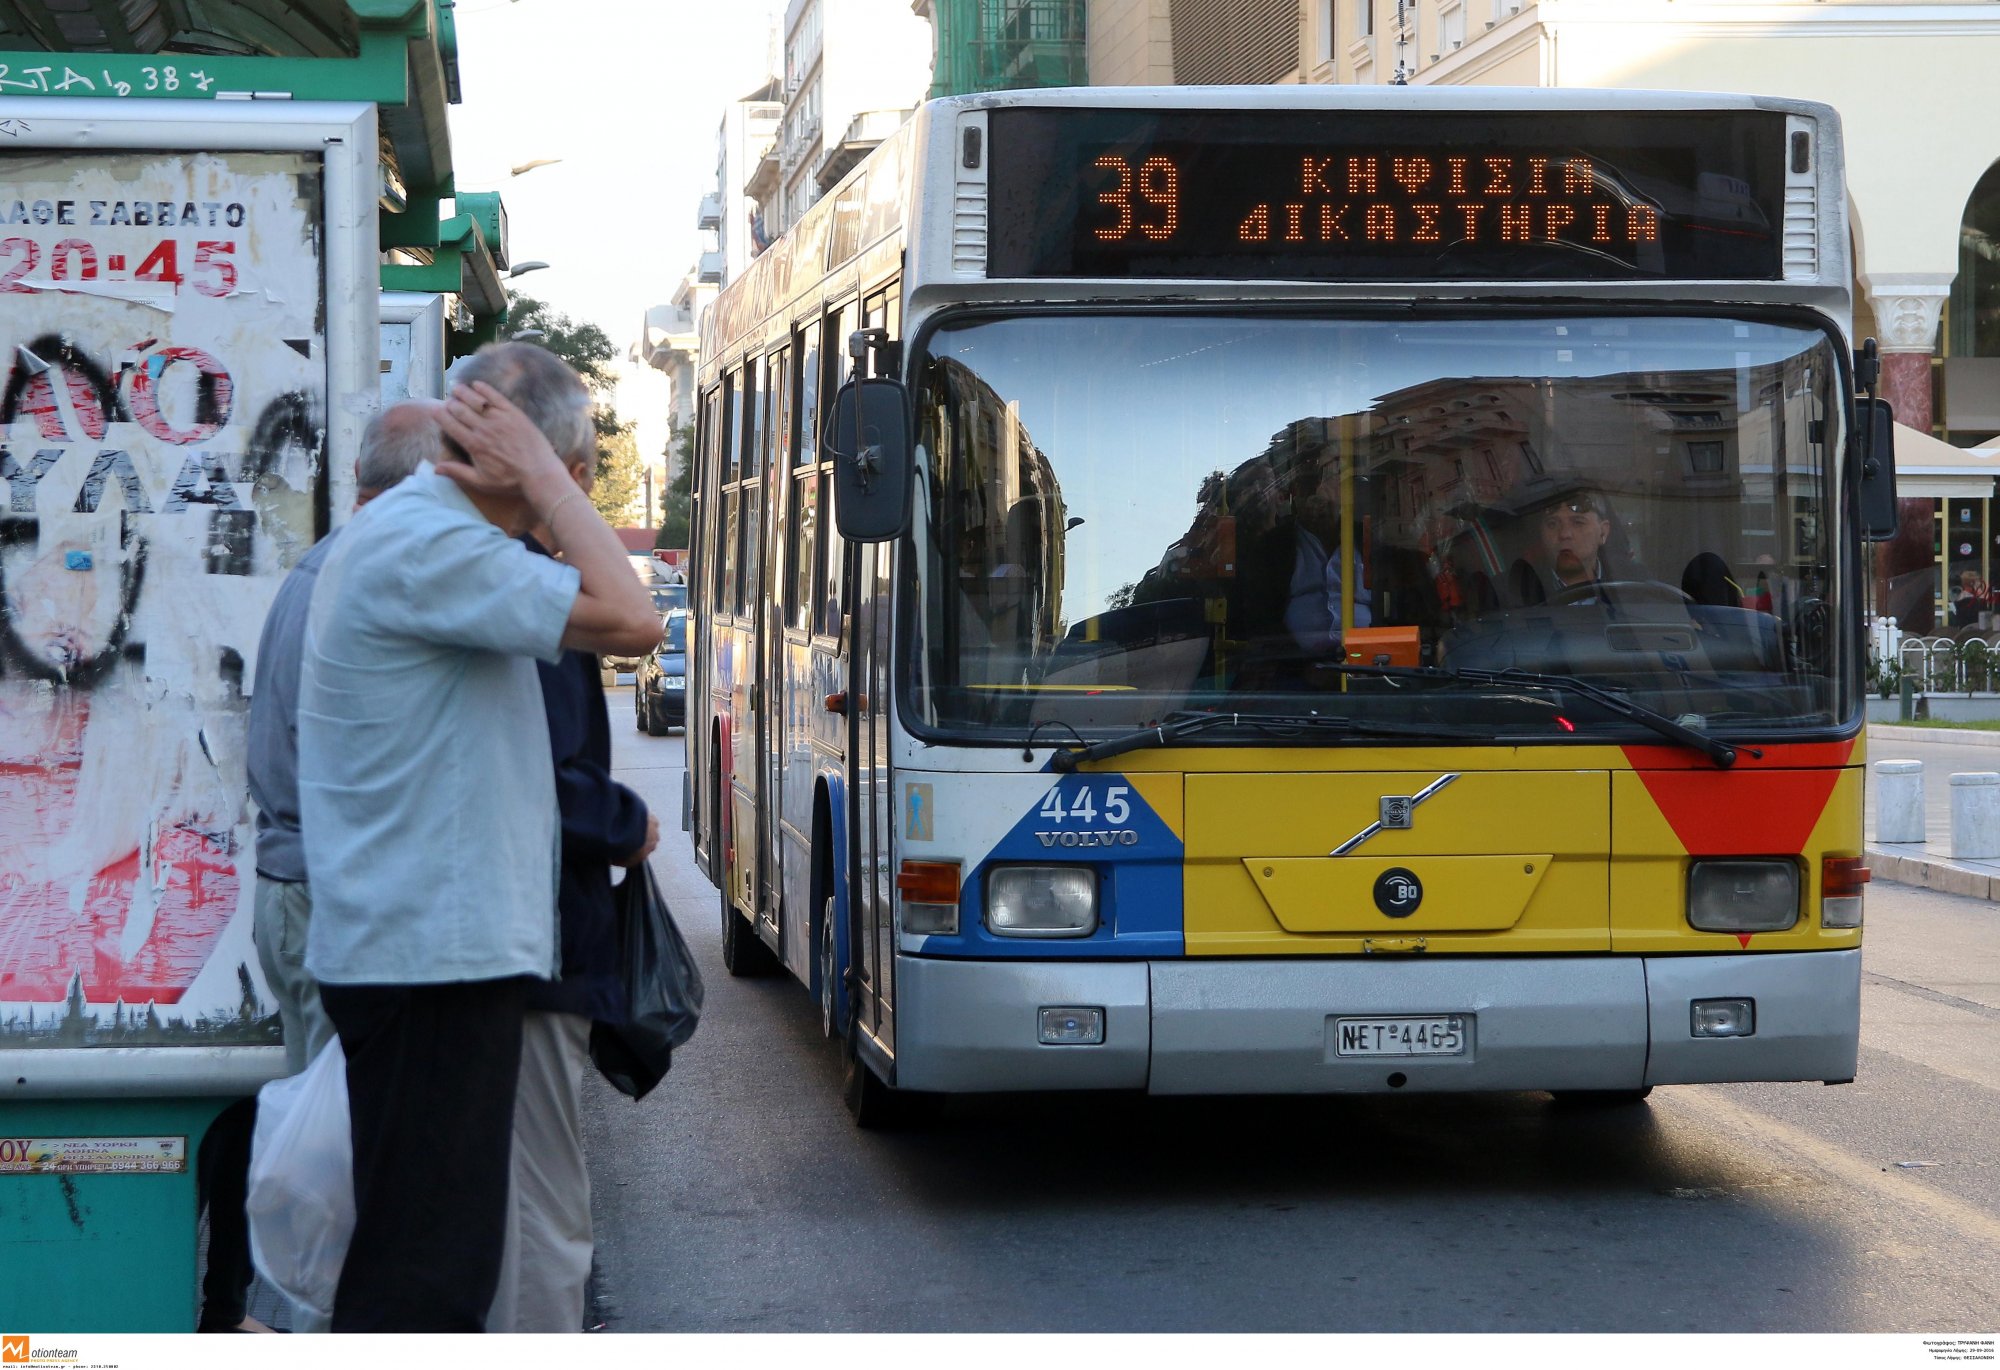 Θεσσαλονίκη: Οδηγός και επιβάτες παγίδεψαν... πορτοφολού μέσα σε αστικό λεωφορείο